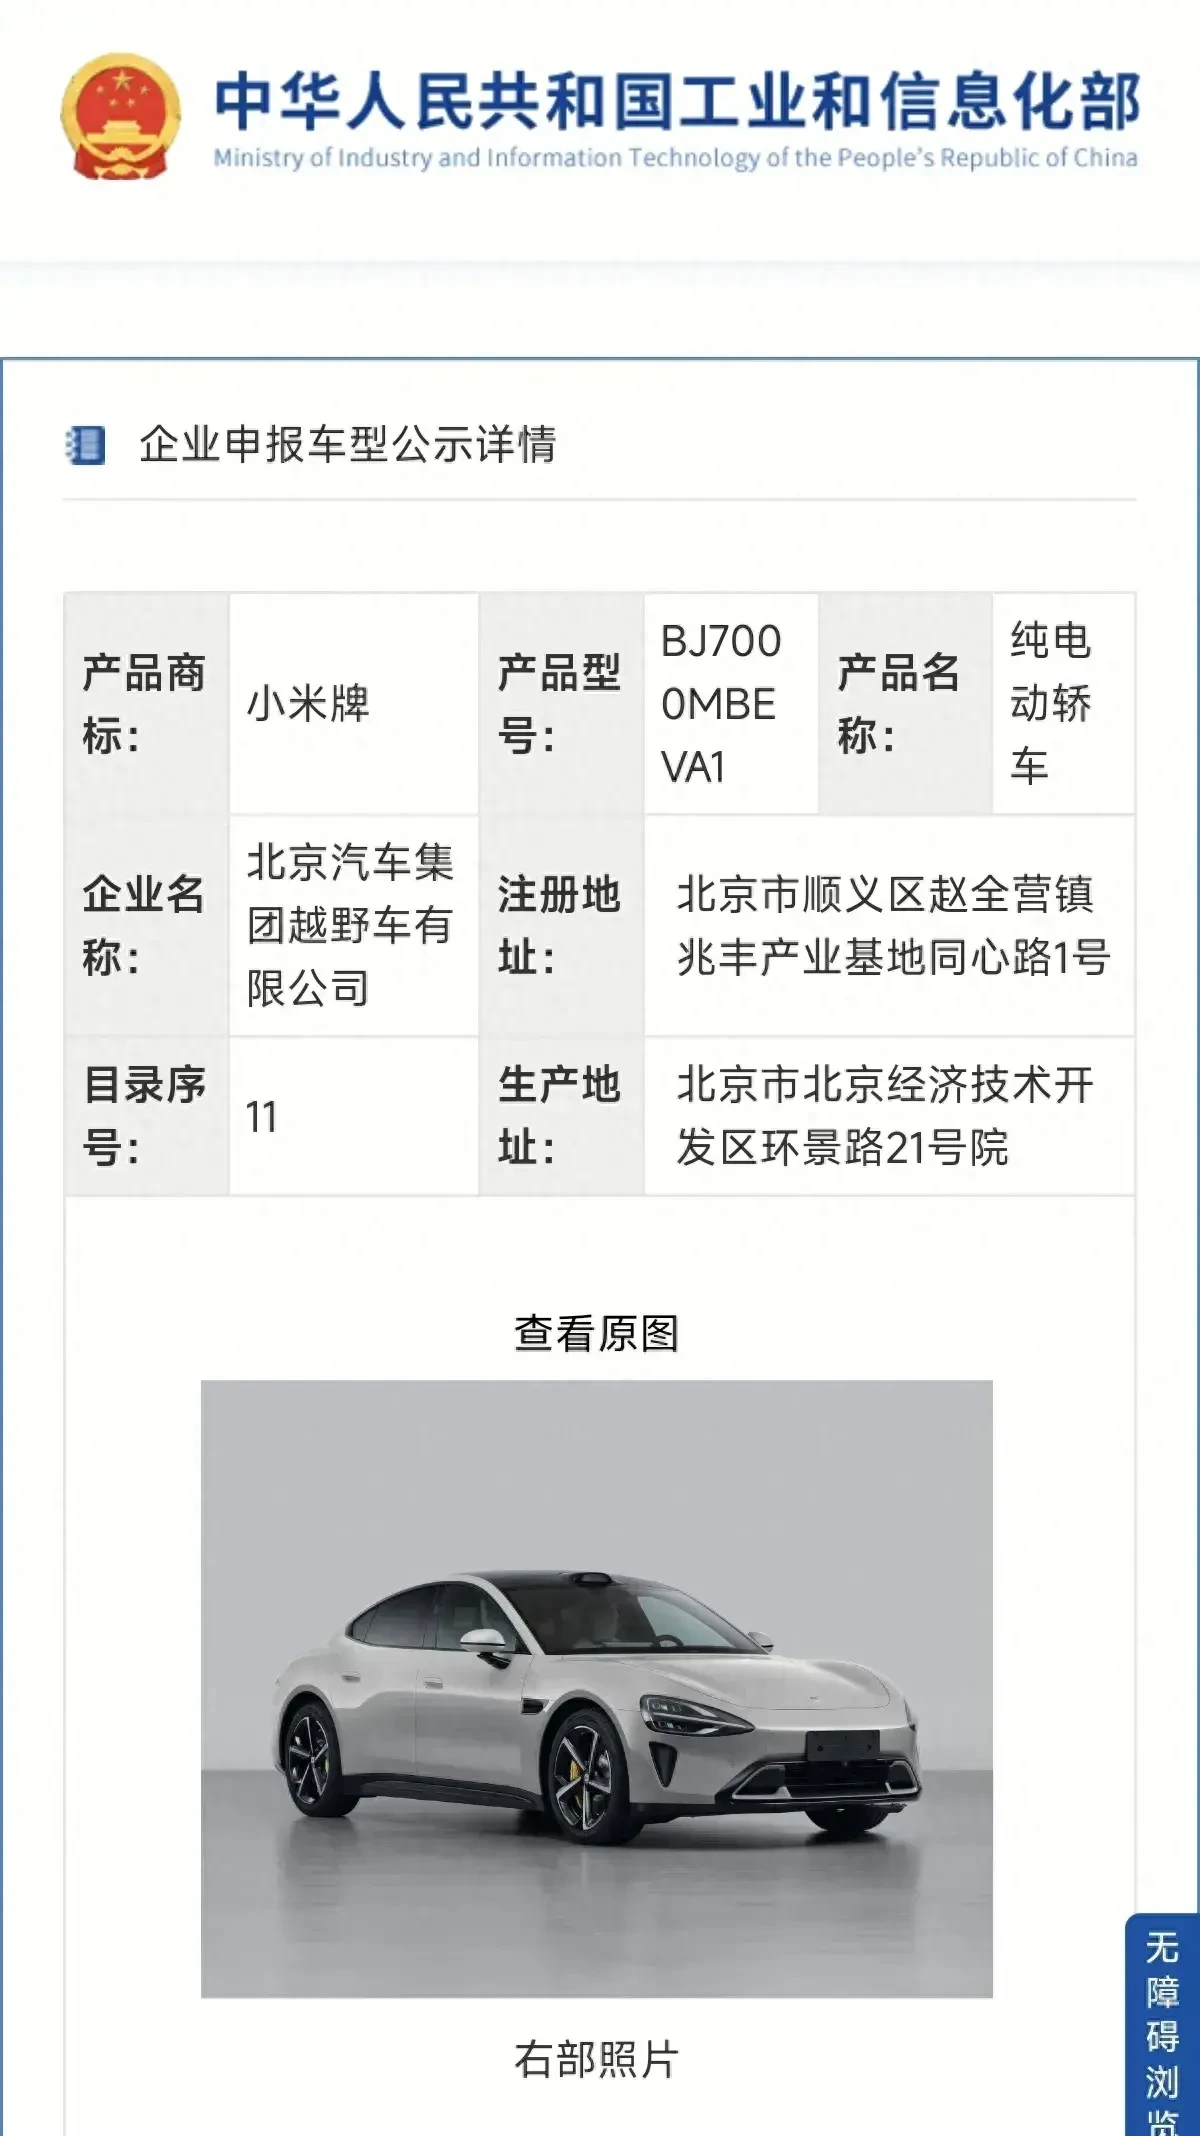 消息称小米汽车首款车型将主攻20万以下市场：江淮或代工-小米,汽车 ——快科技(驱动之家旗下媒体)--科技改变未来